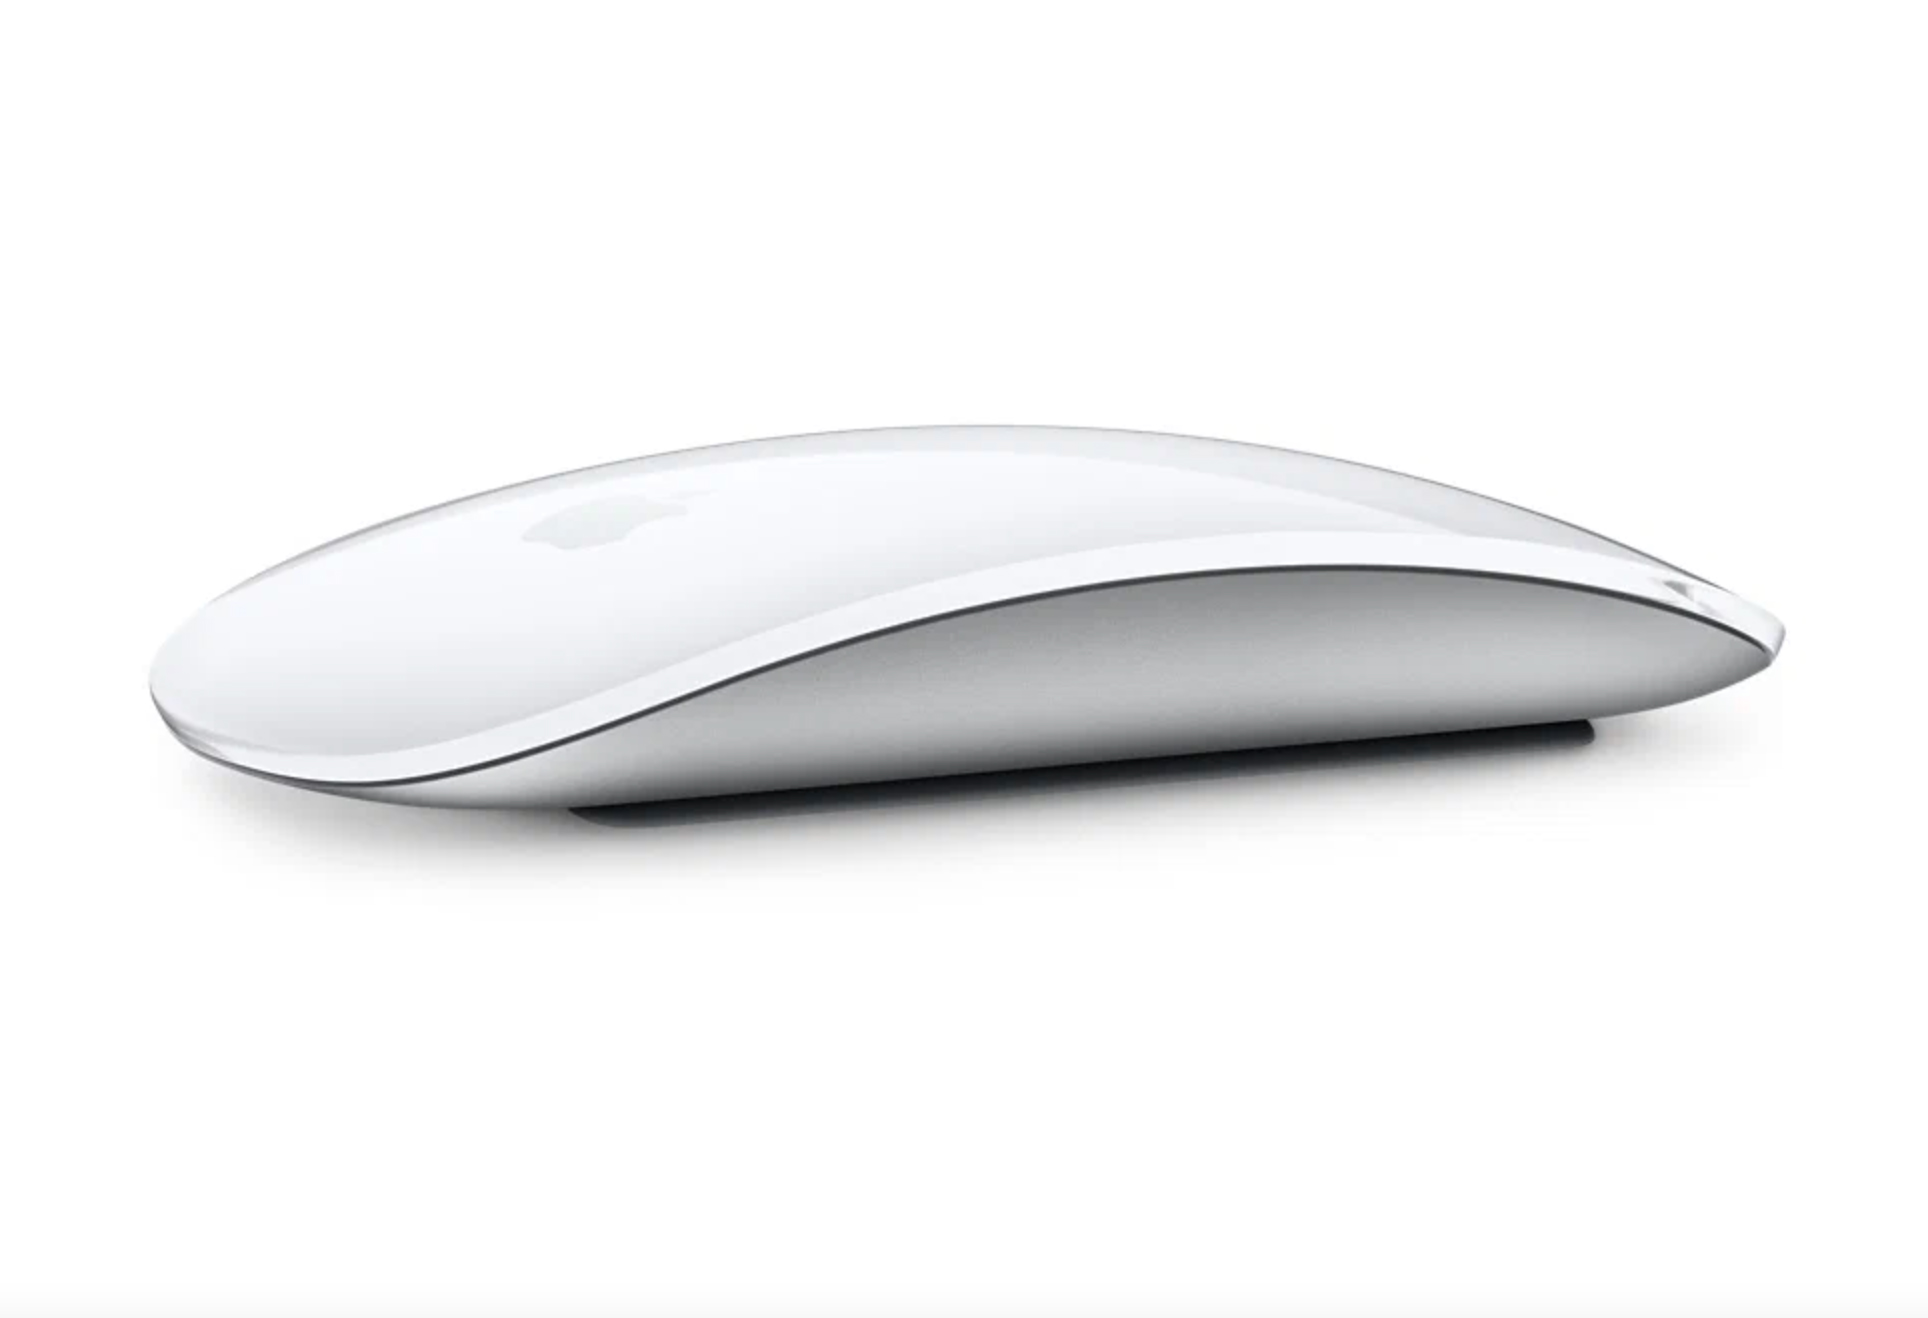 Беспроводная мышь Apple Magic Mouse 3 White